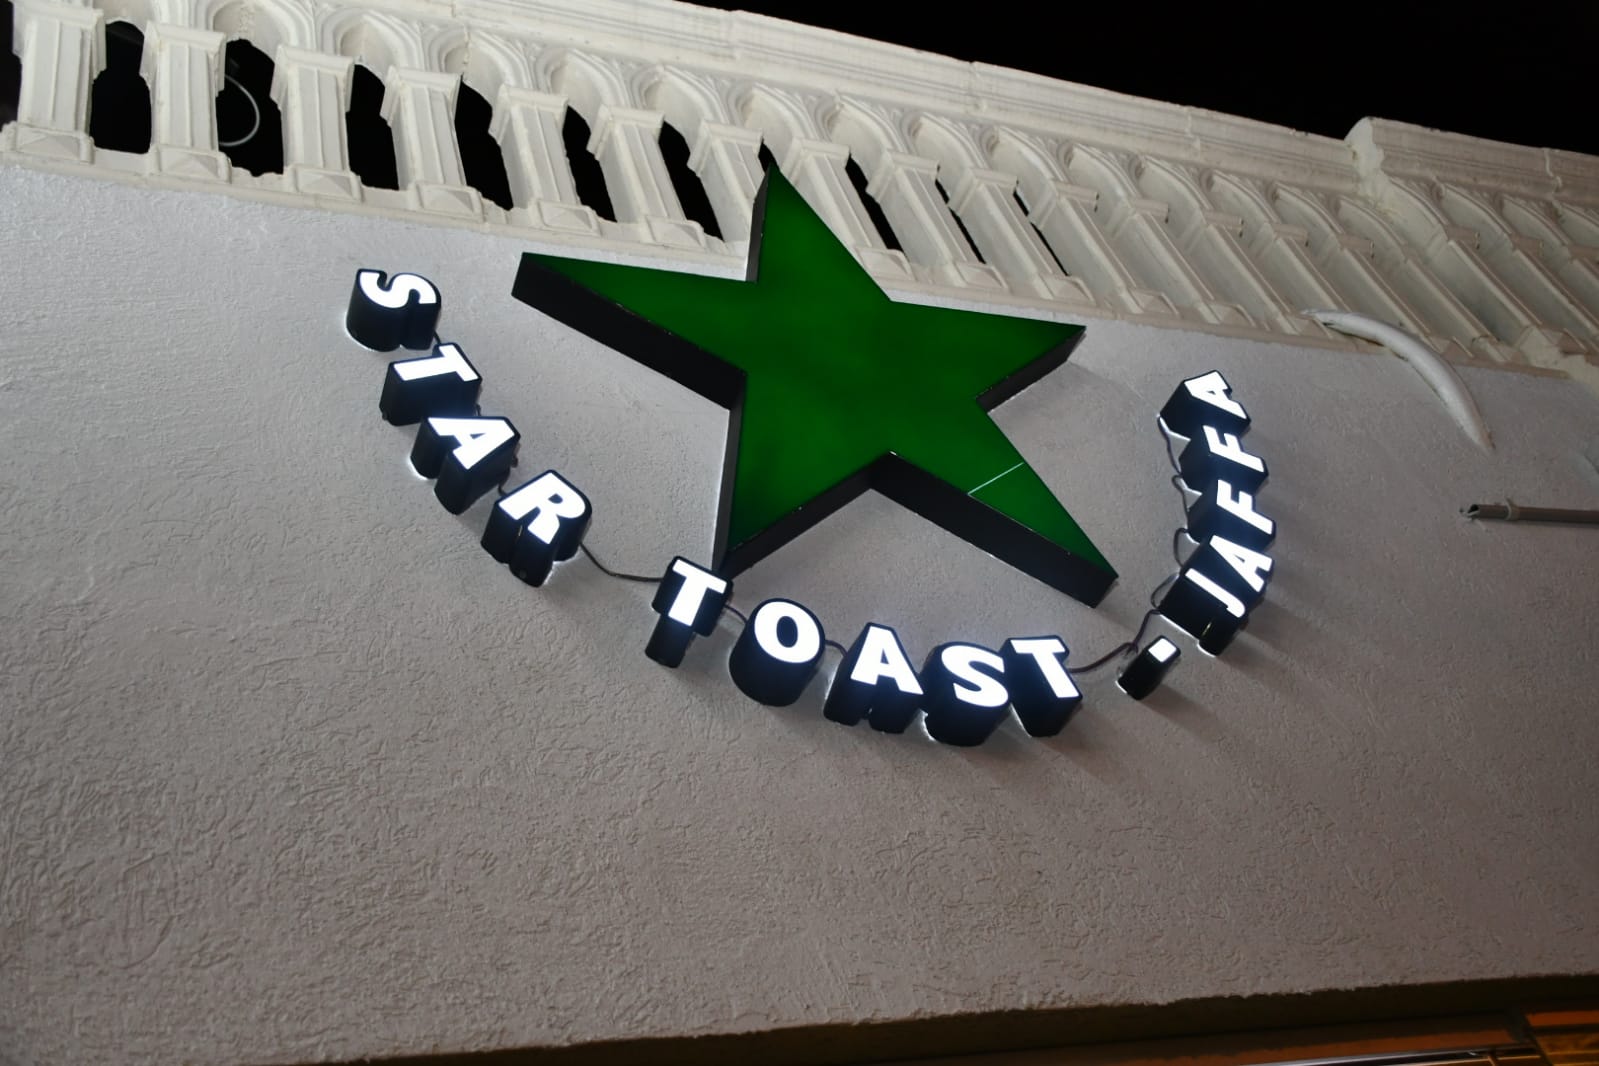 اليوم: افتتاح Star toast بيافا للوجبات السريعة والسندويشات 